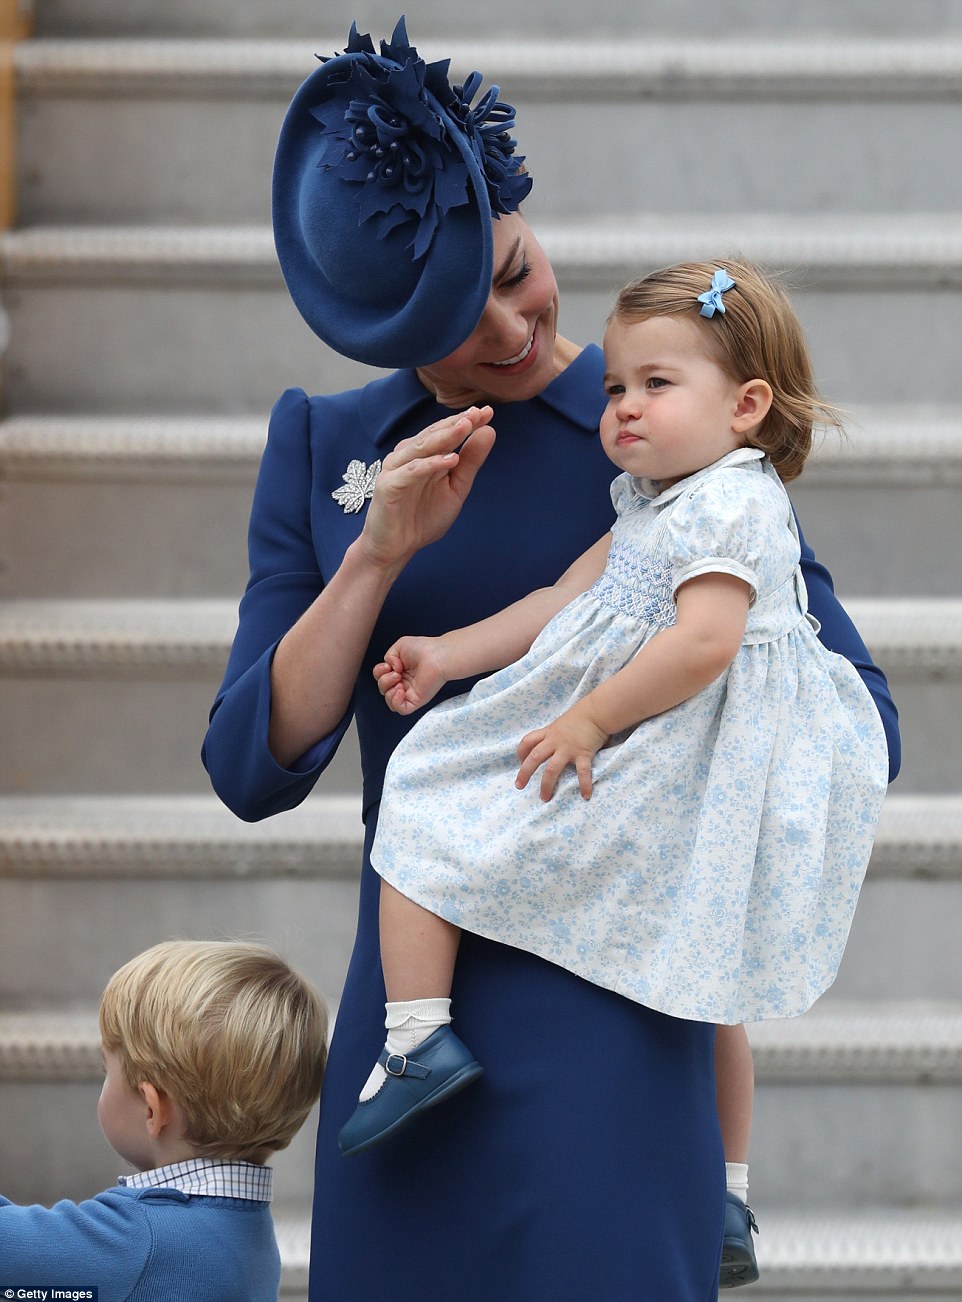 Принц Джордж и принцесса Шарлотта: фото с родителями - первый официальный визит малышей